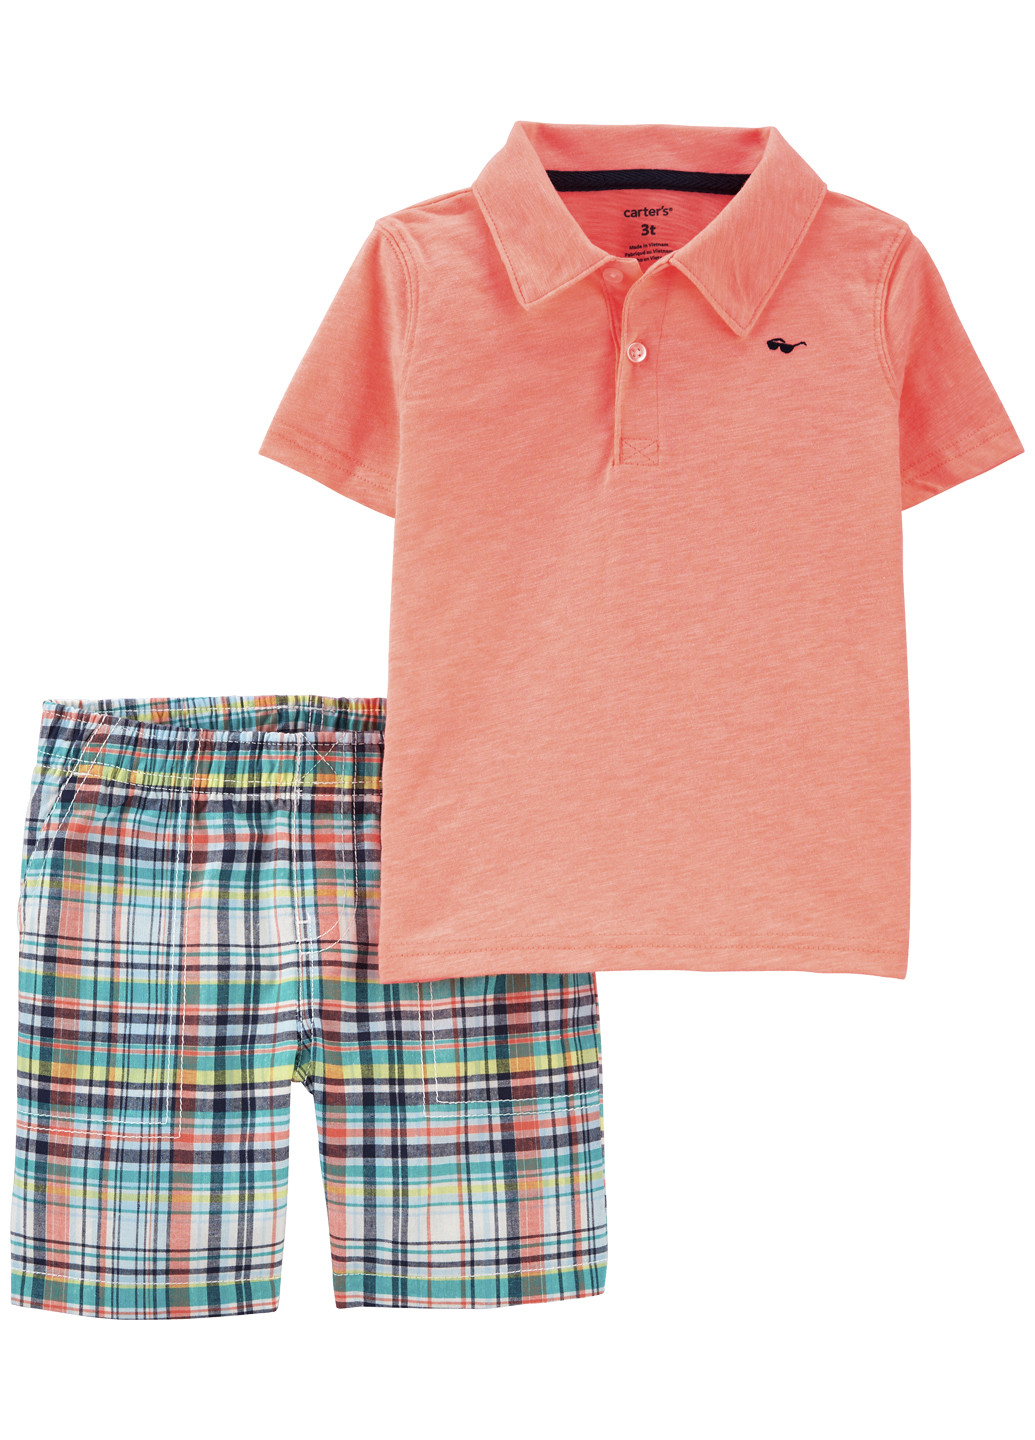 Кислотно-оранжевий літній костюм для хлопчика Carter's